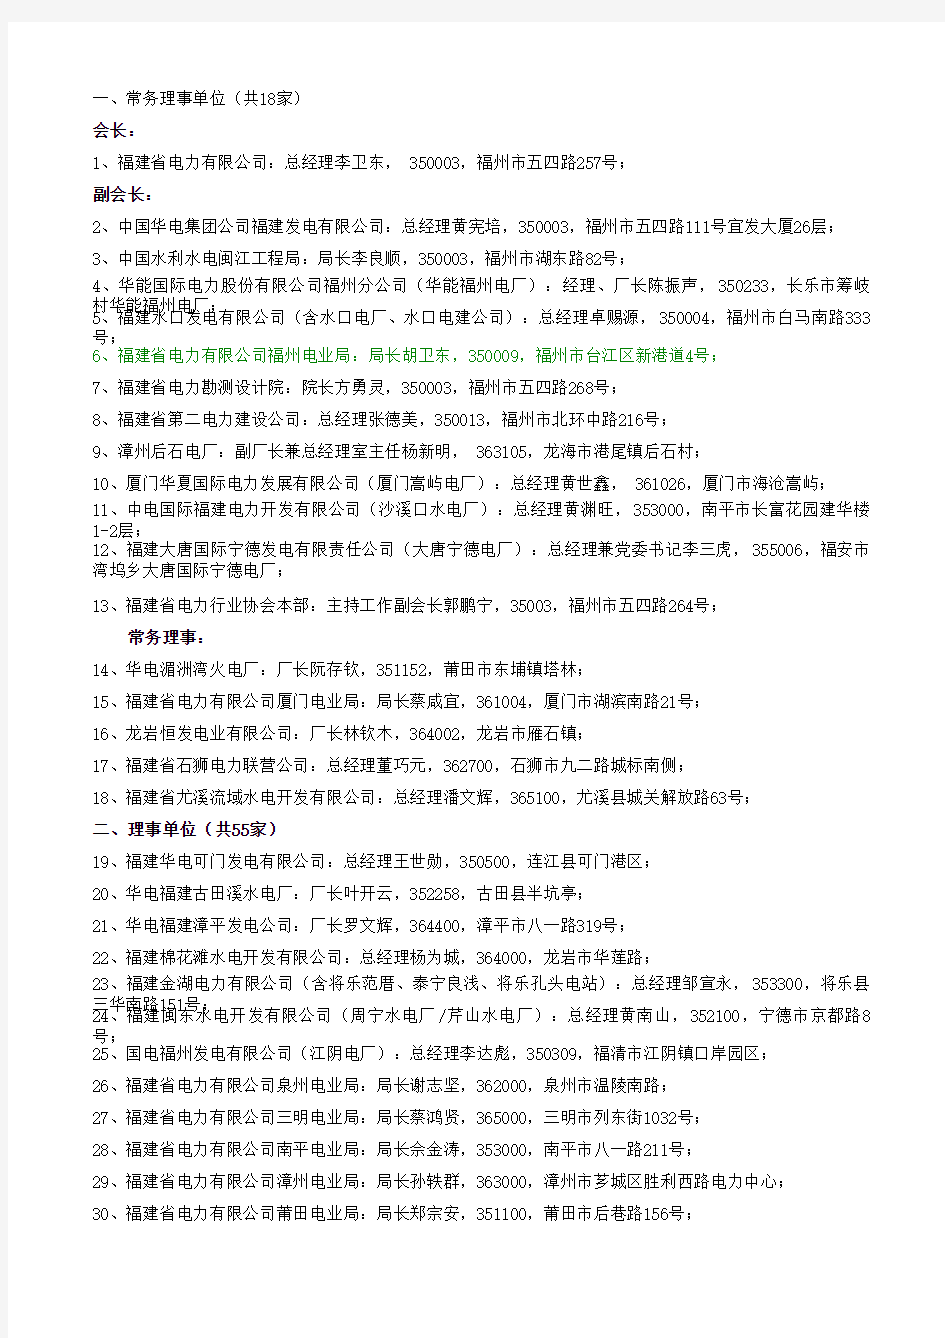 福建省电力协会名单